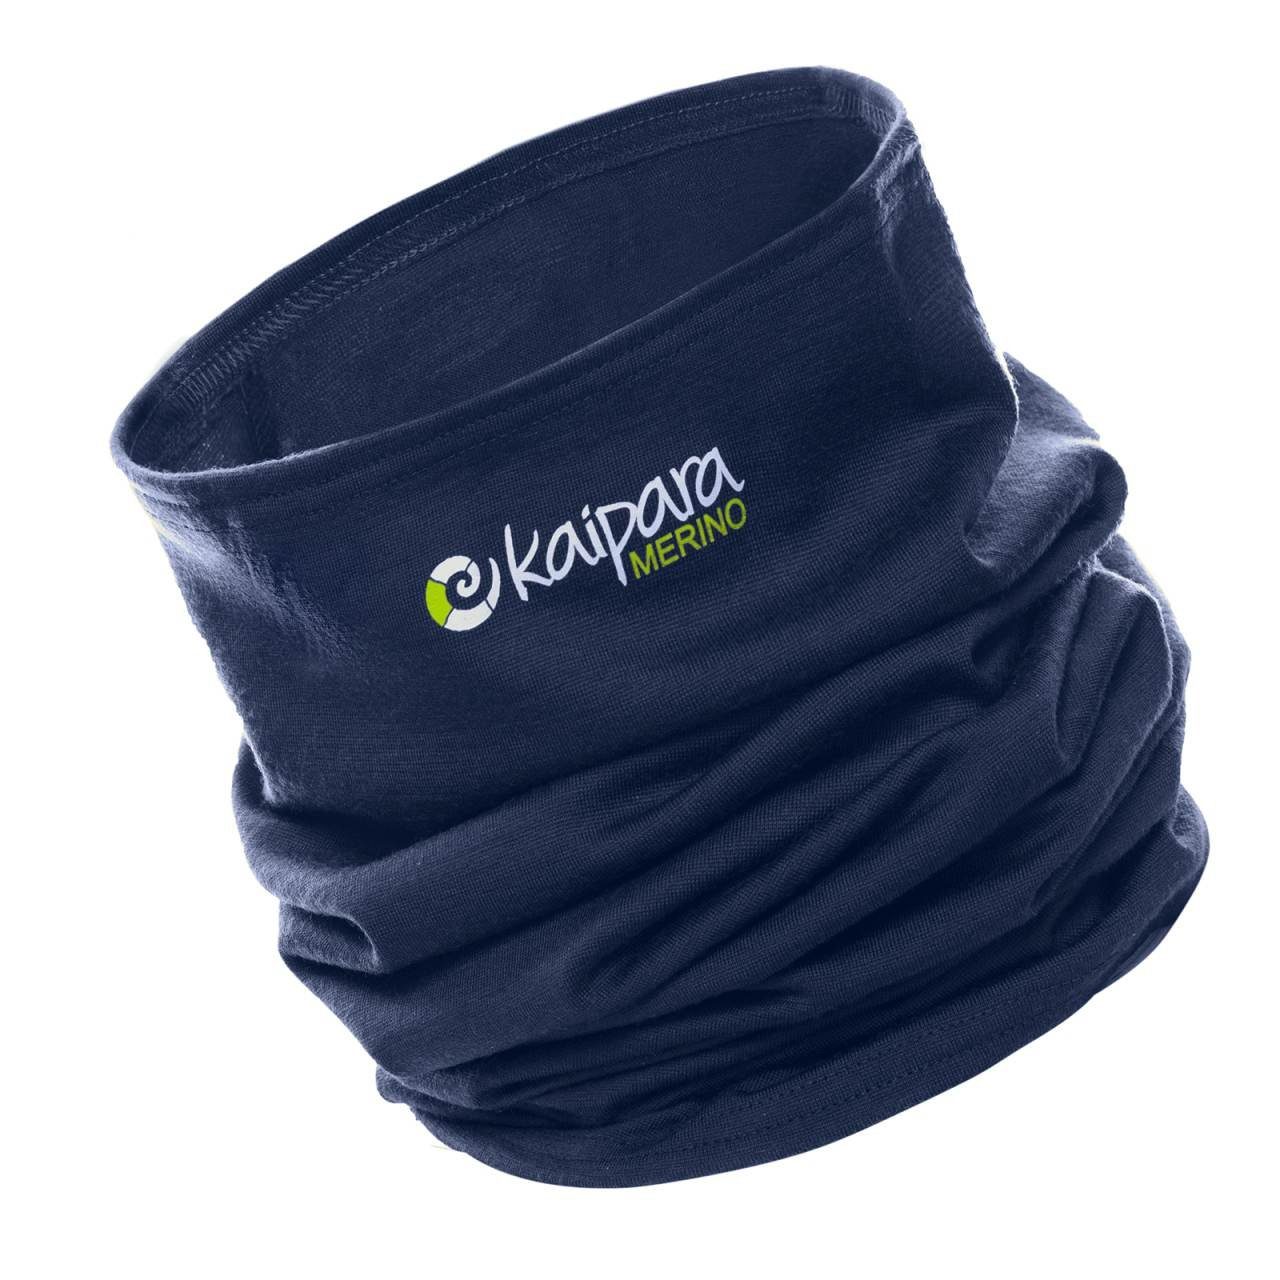 Kaipara - Merino Sportswear reiner 200, in Bandana Blau Made aus Germany Merino Schal Unisex Merinowolle